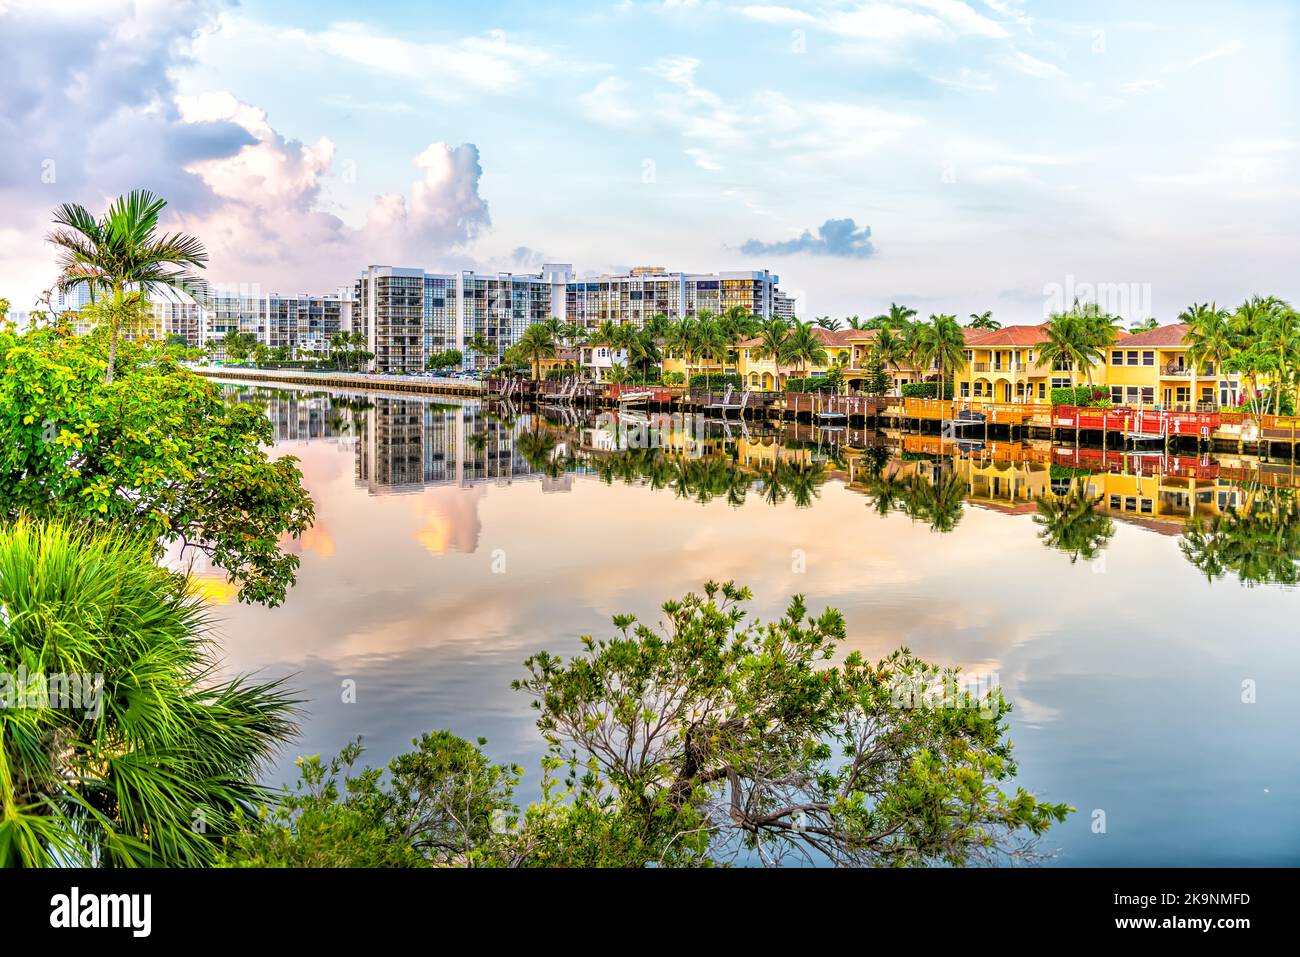 Plage de Hollywood à Miami, Floride avec canal d'eau Intracoastal rivière Stranahan, vue sur la propriété en front de mer maisons modernes de villas maisons au coucher du soleil Banque D'Images